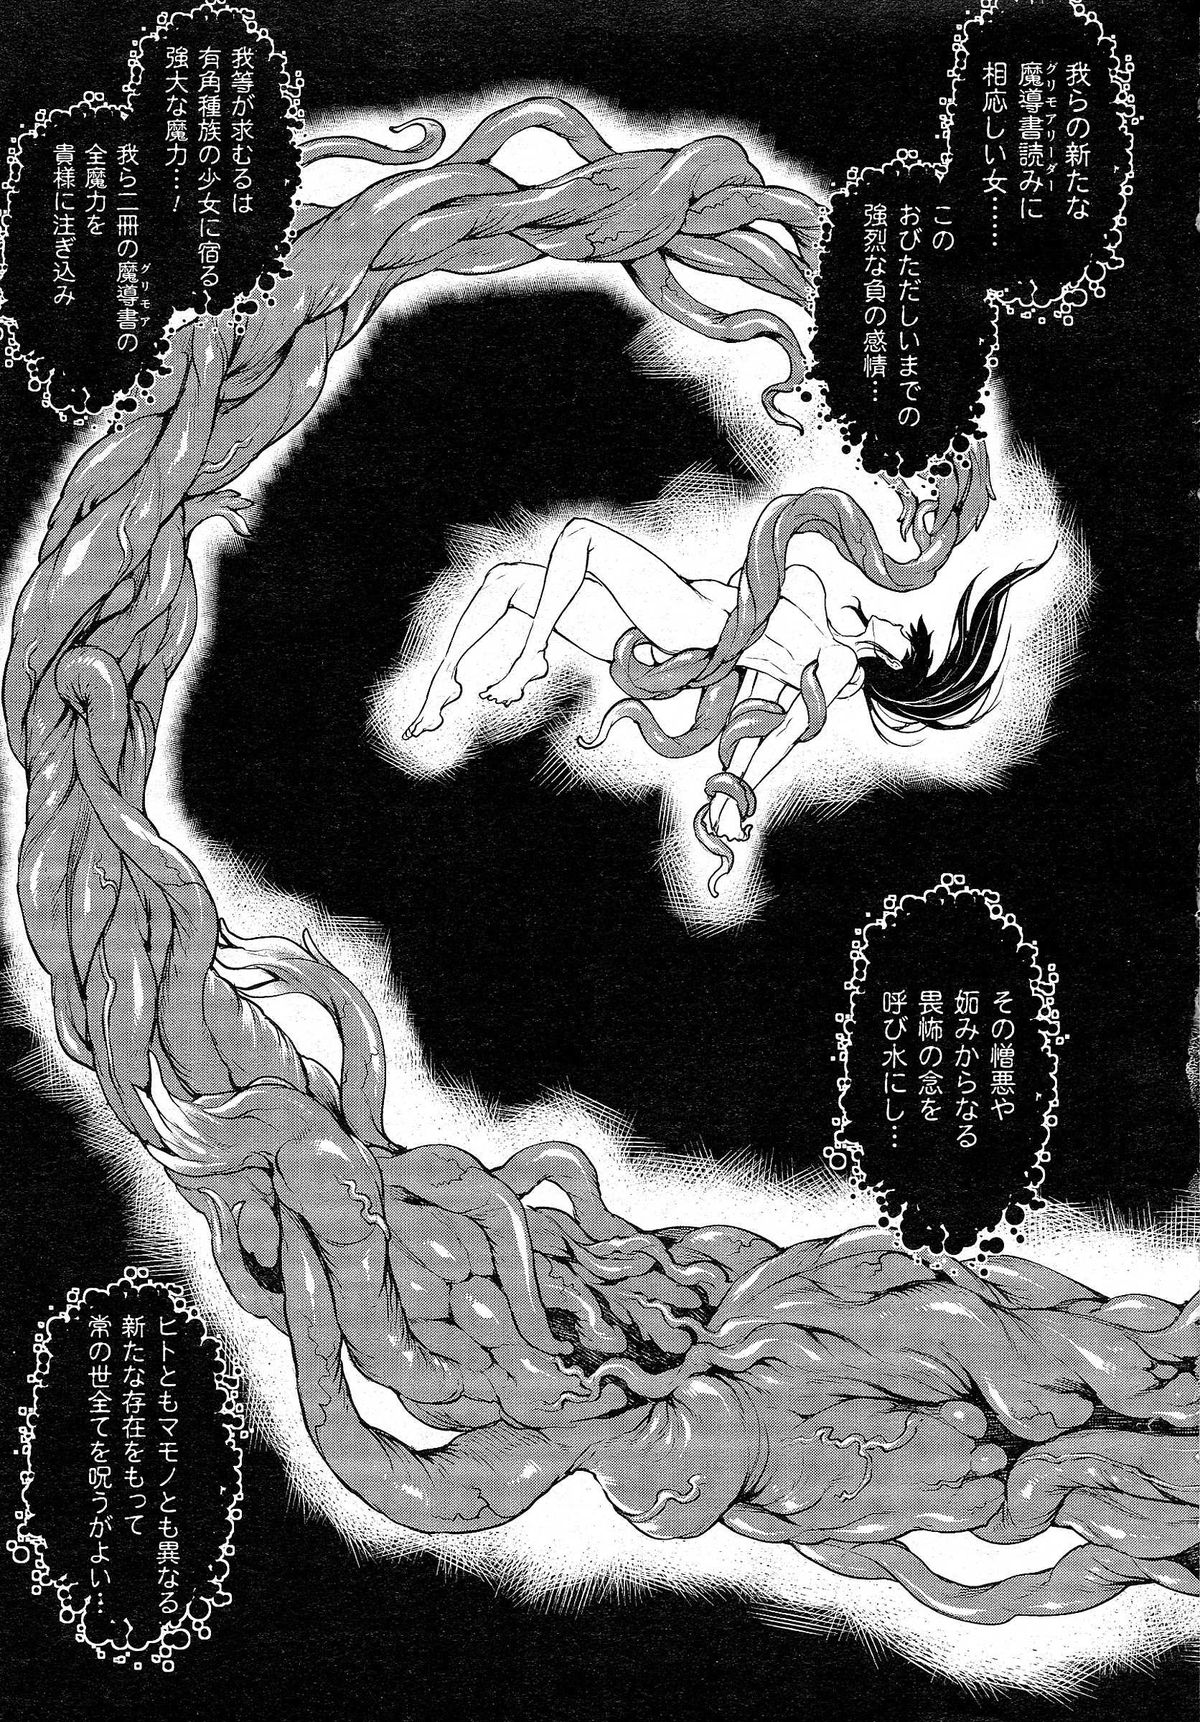 [エレクトさわる] 神曲のグリモワール －PANDRA saga 2nd story 第十三節 - 第二十節